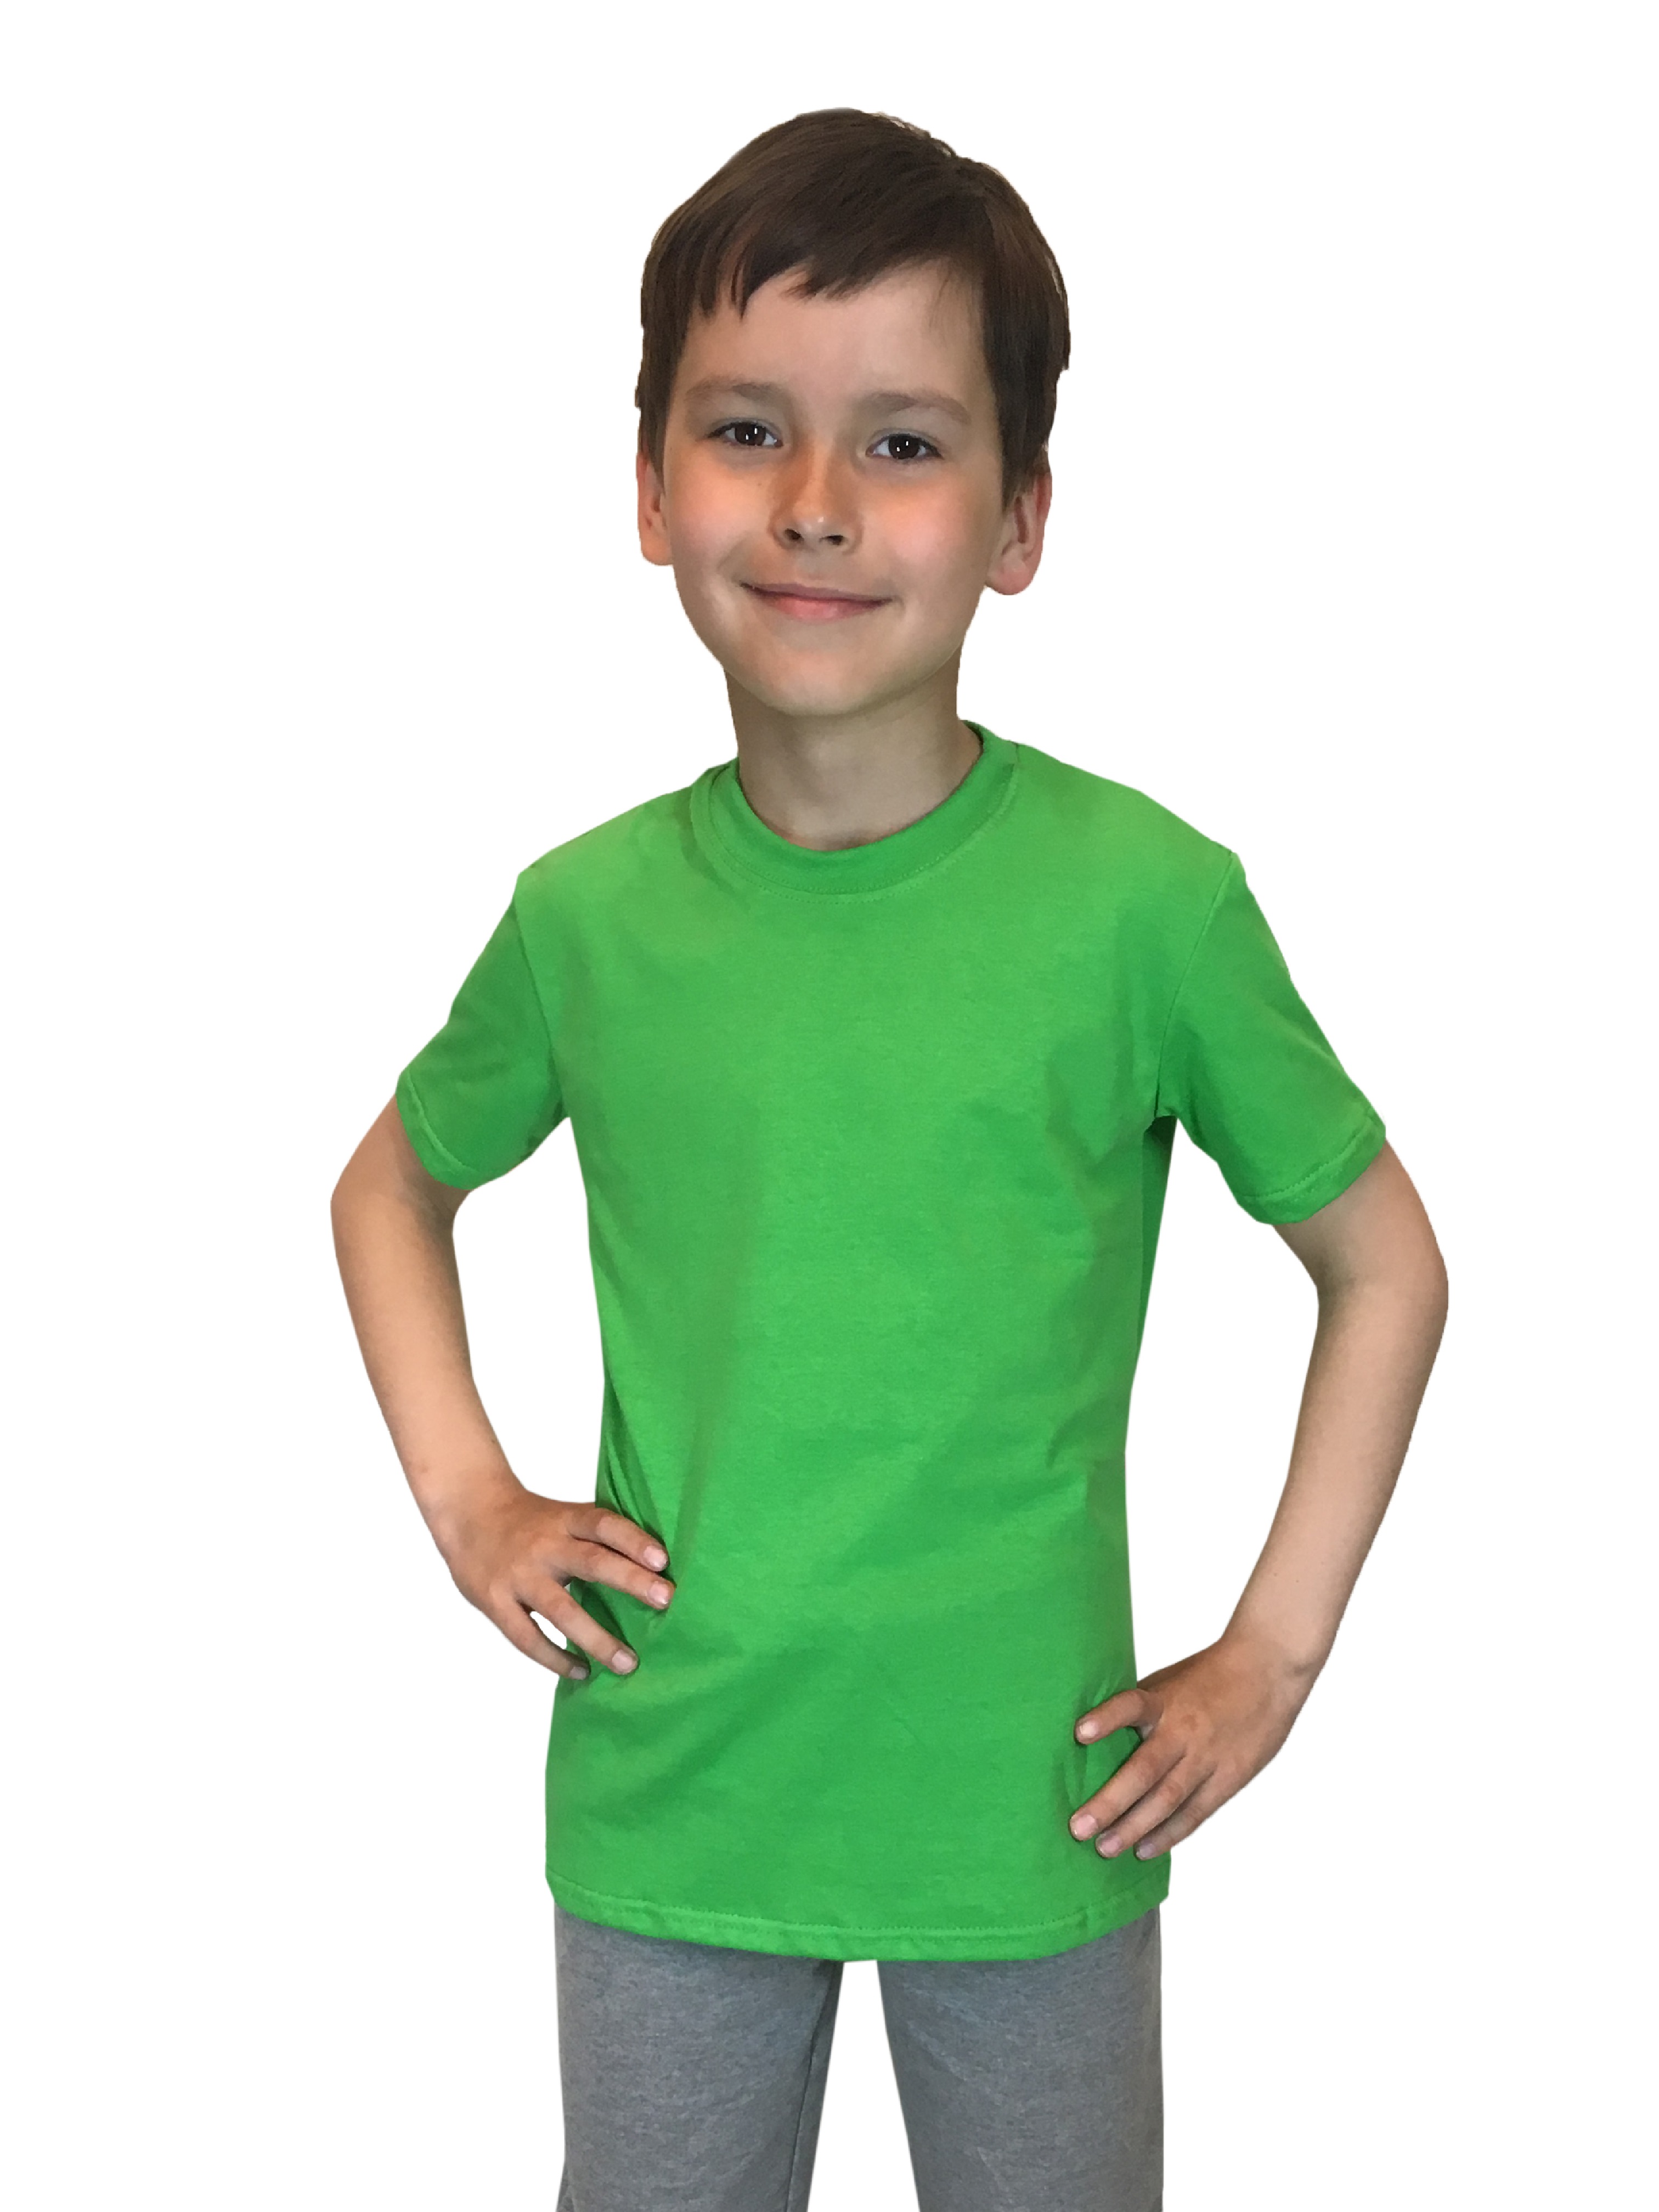 Футболка детская Детрик, зеленый размер 128, Ф-1-67